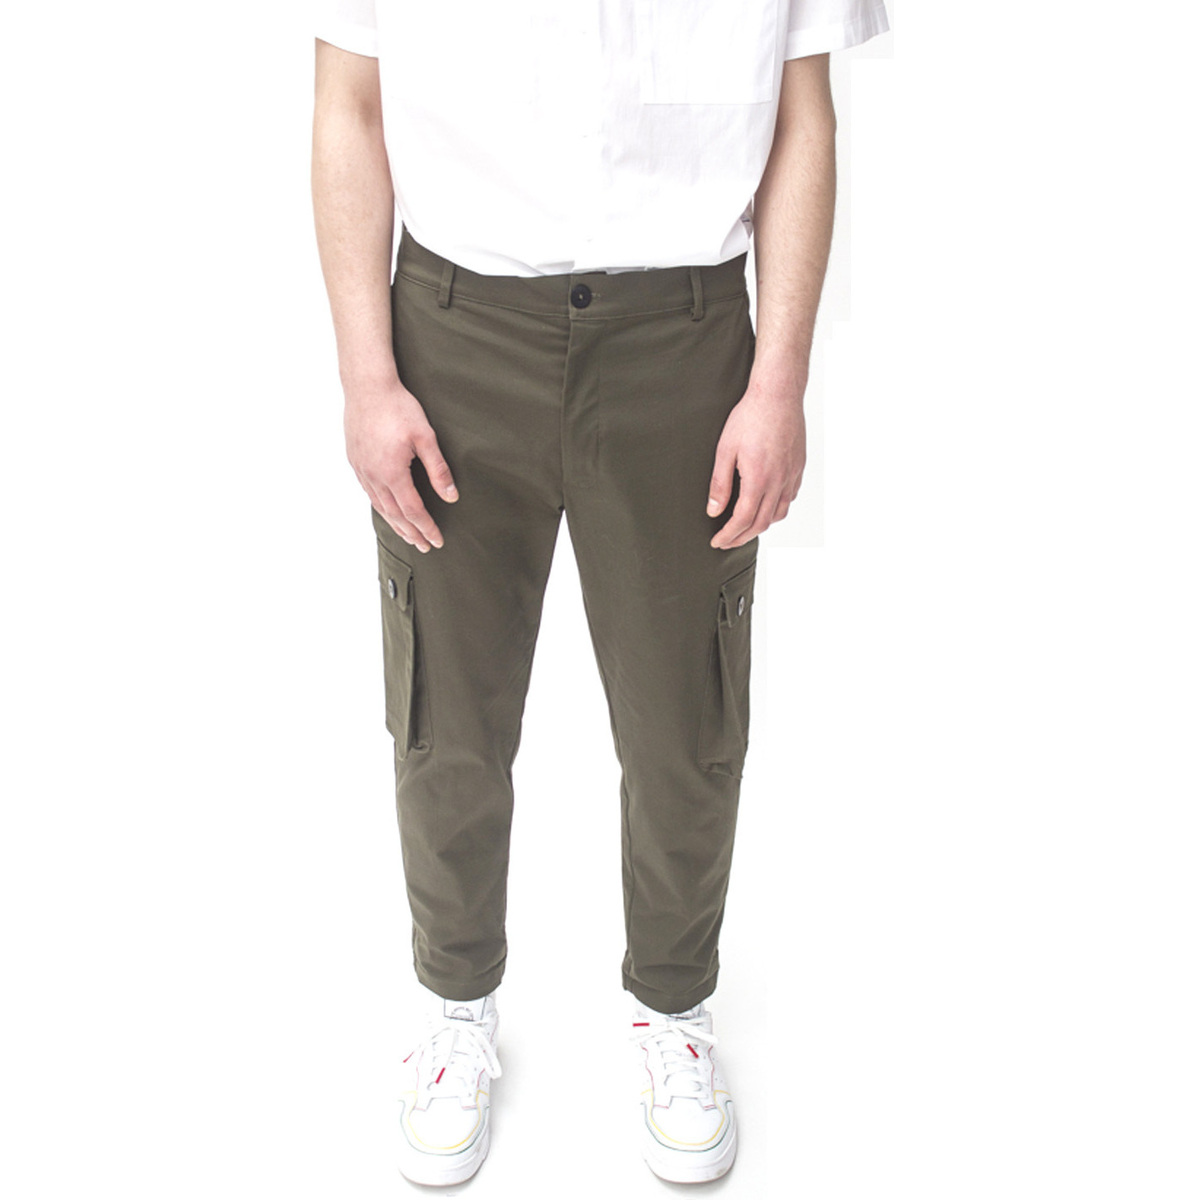 Abbigliamento Uomo Pantaloni C.9.3 -2091C293 Verde